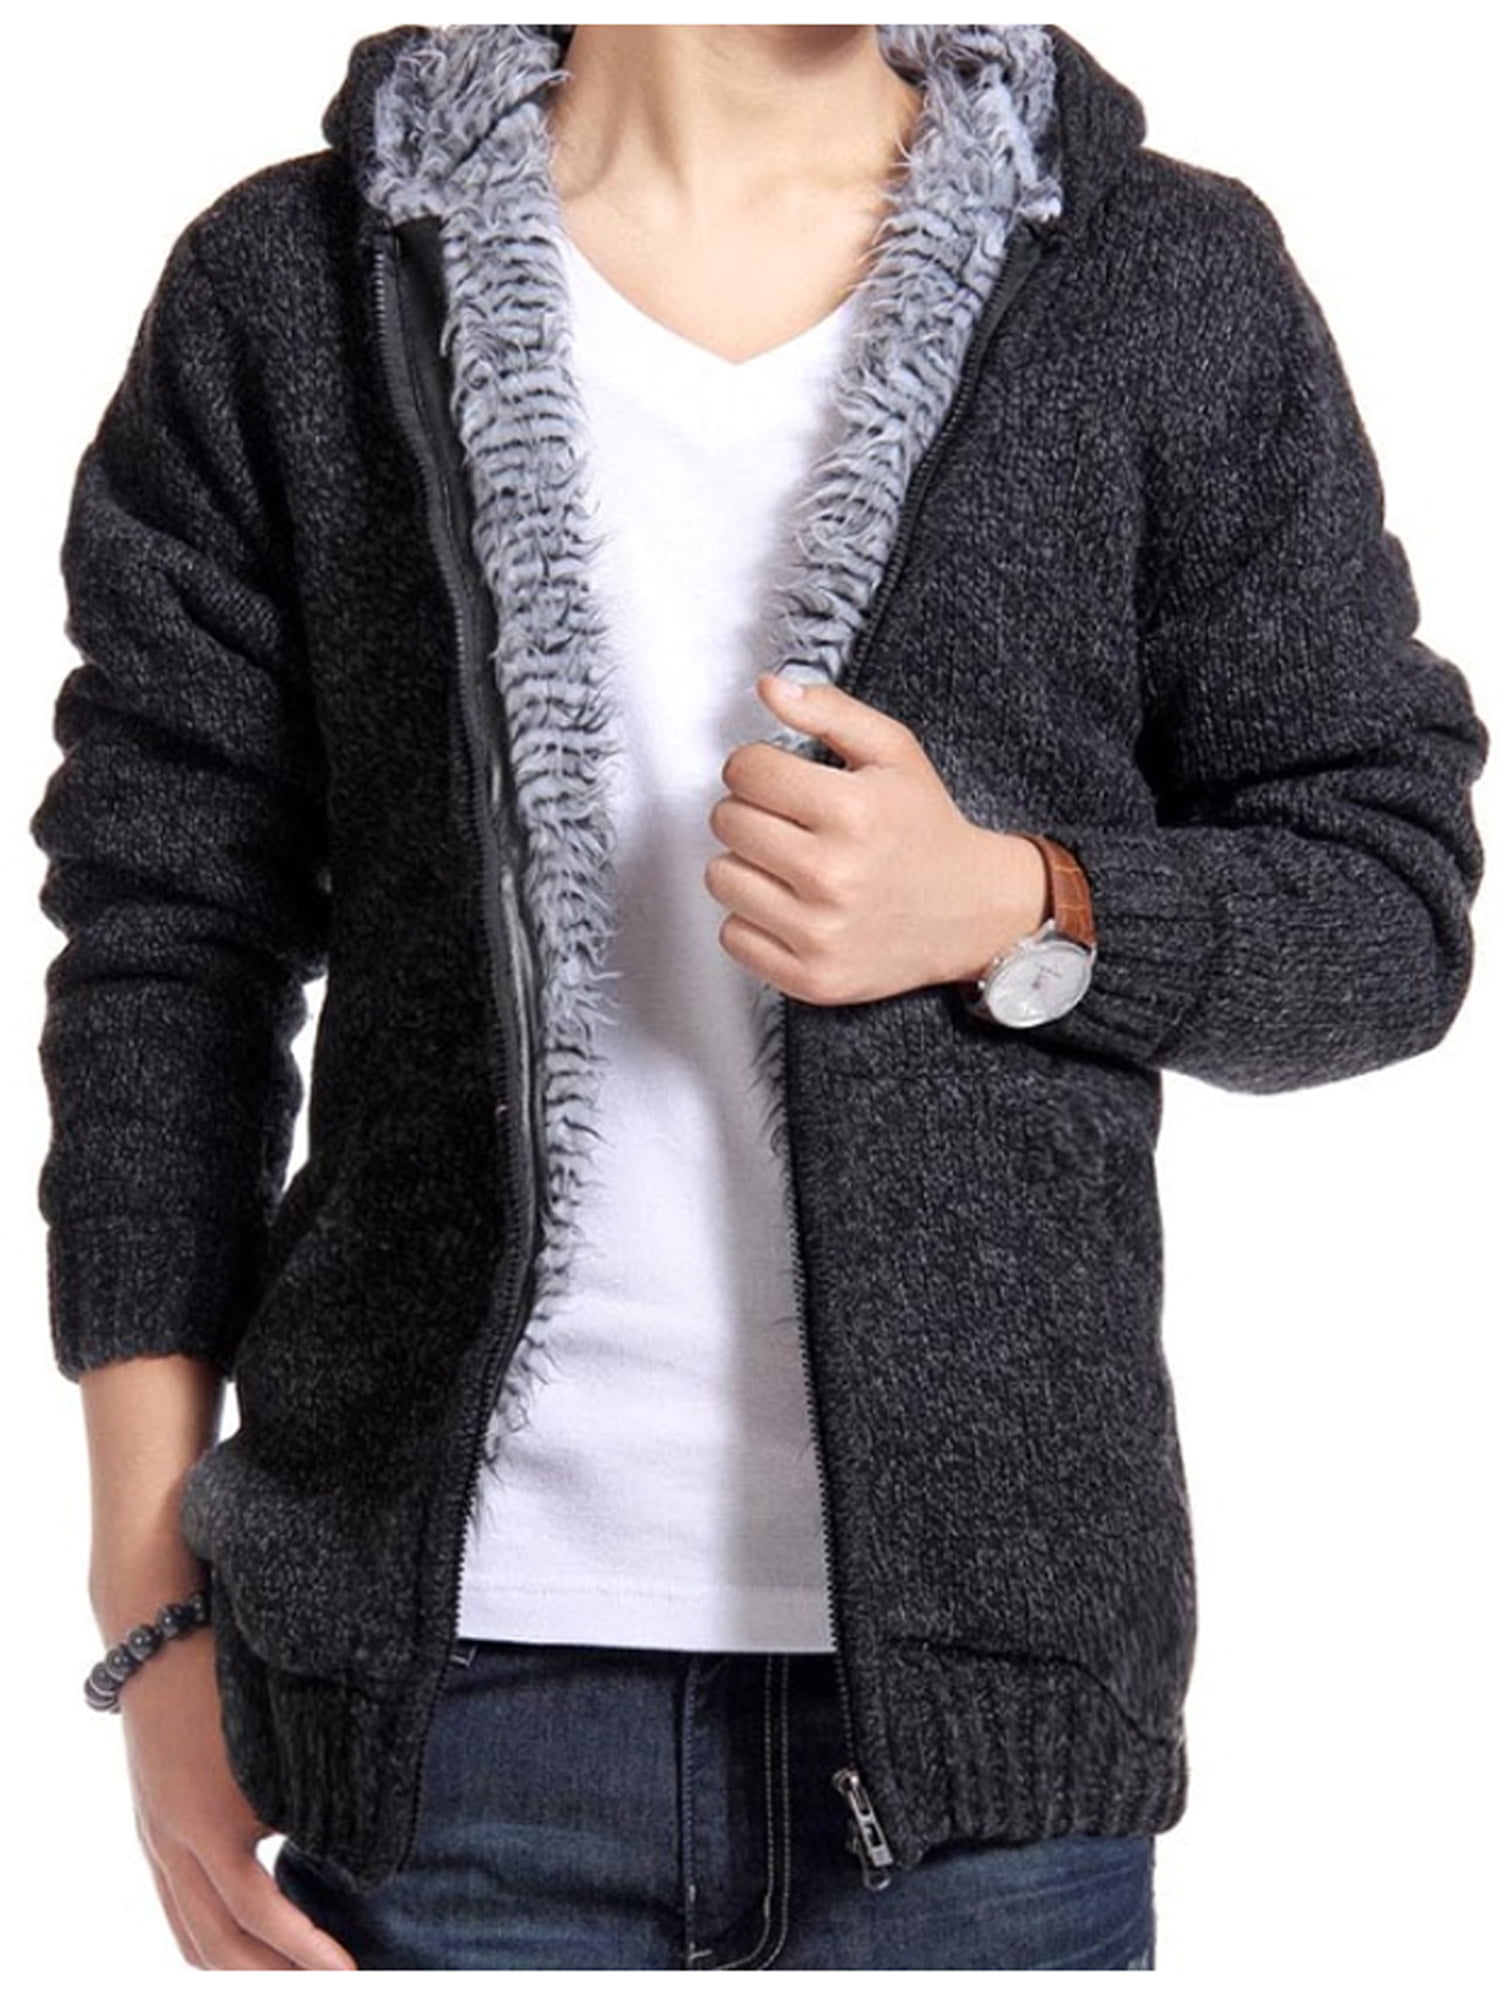 Sport Men's Warm  Knit Sweatshirt Coat Jacket Outwear Winter Sweater Colorblock